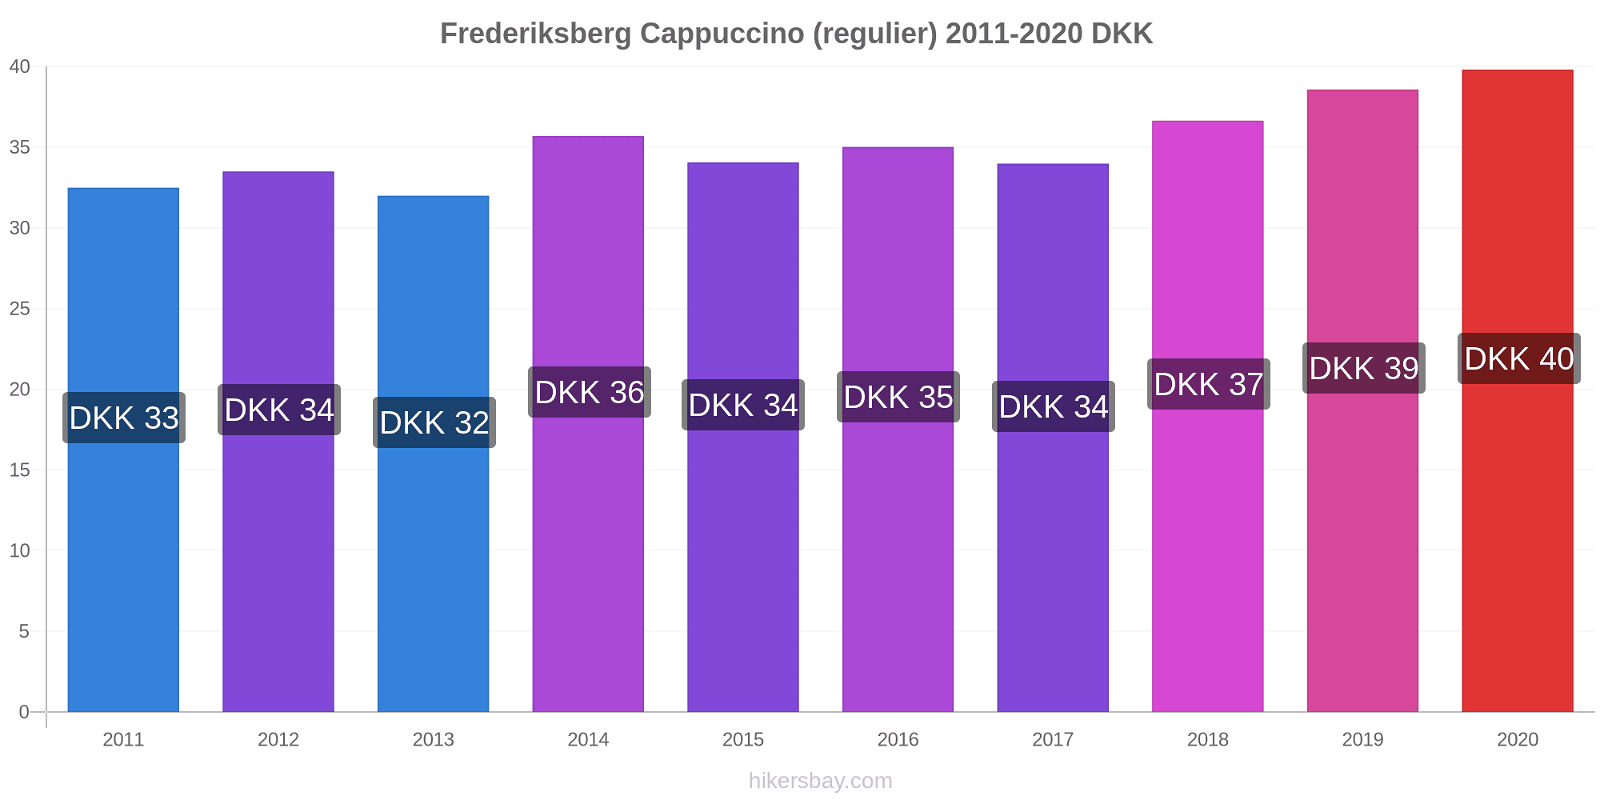 Frederiksberg prijswijzigingen Cappuccino (regelmatige) hikersbay.com